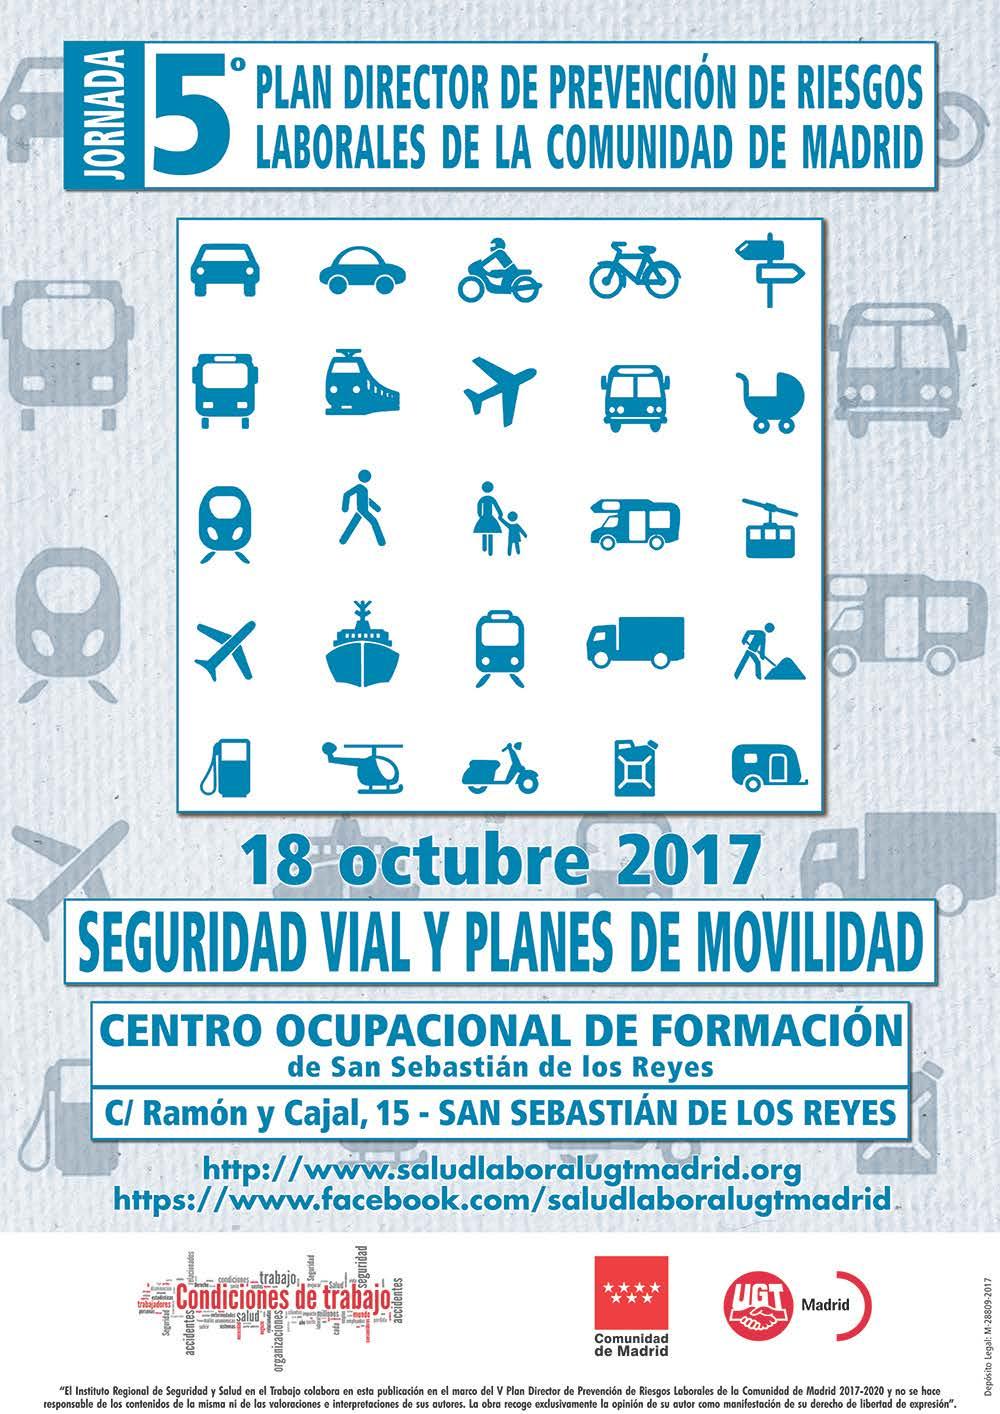 El 18 de Octubre de 2017, UGT Madrid organizamos una jornada informativa sobre Seguridad Vial Laboral y Planes